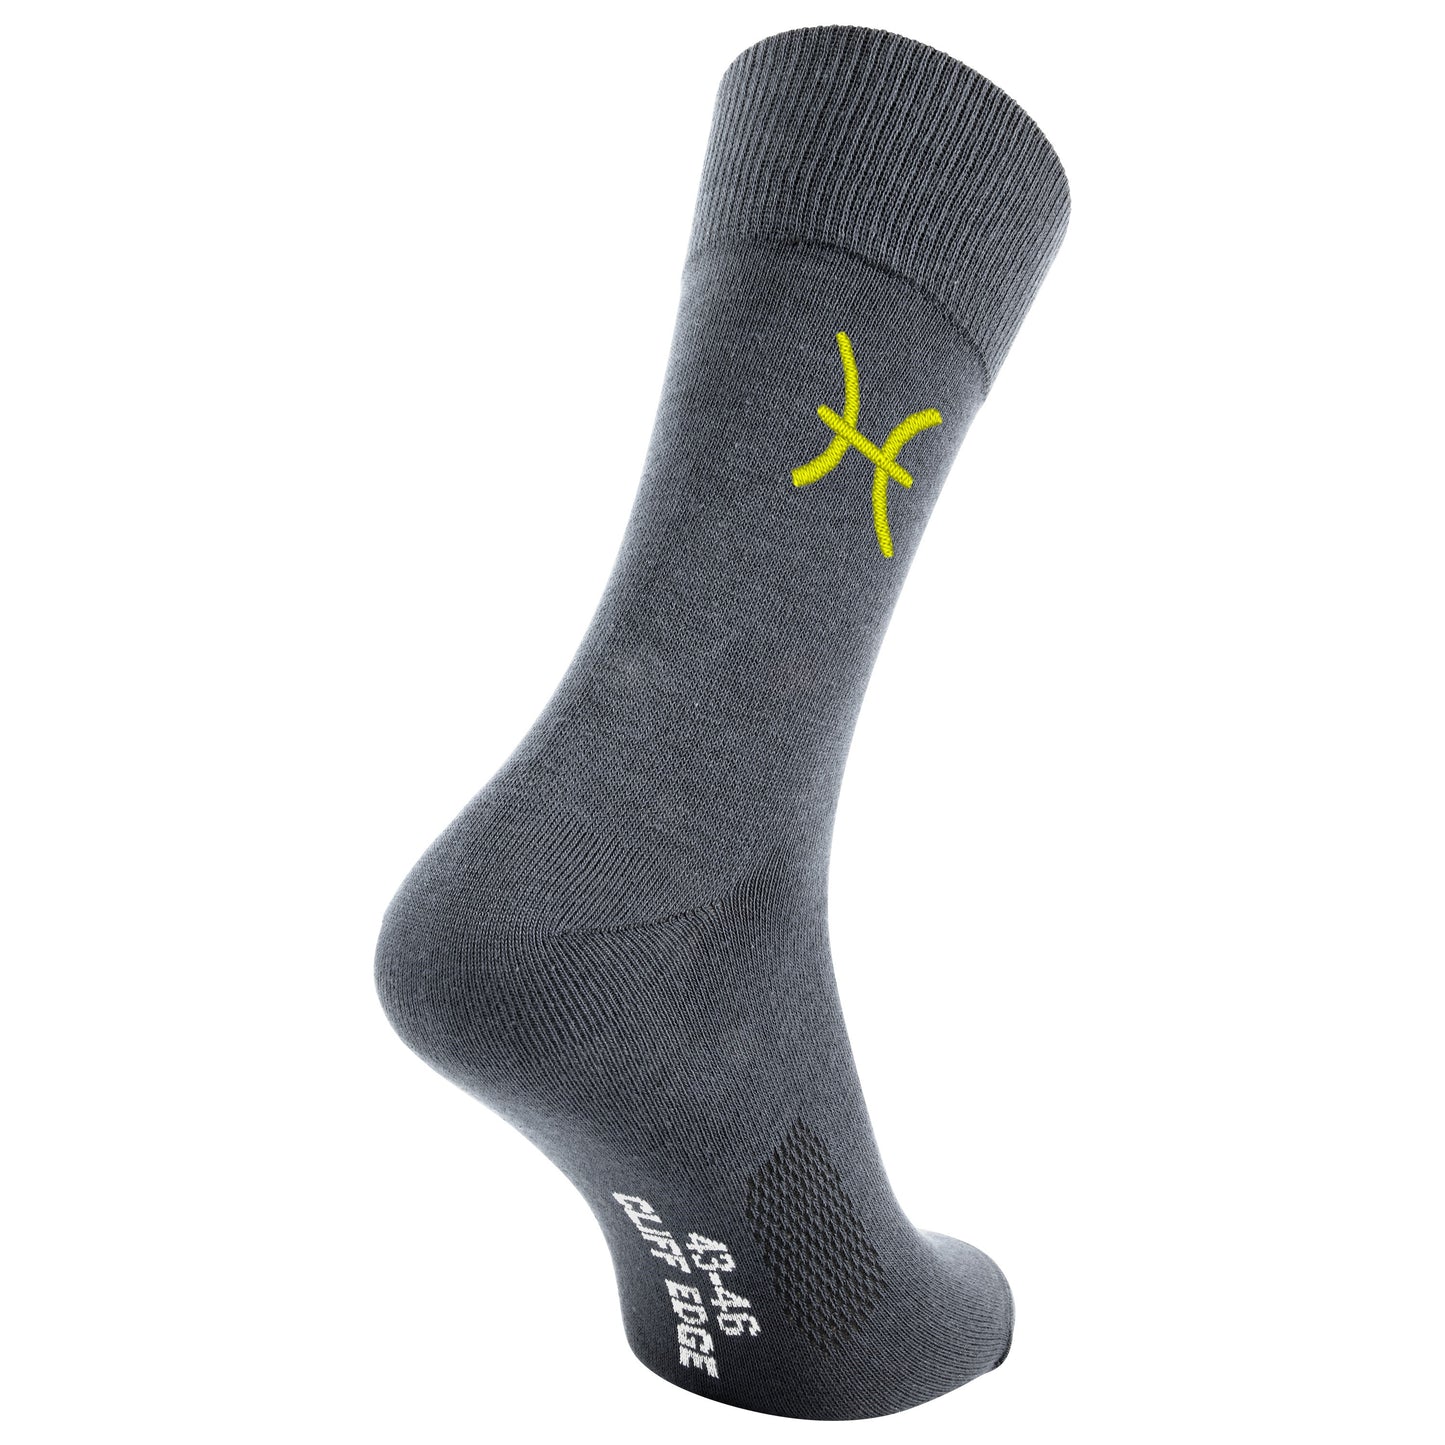 Business-Socken mit Sternzeichen Fische-Sign und Wunschtext bestickt